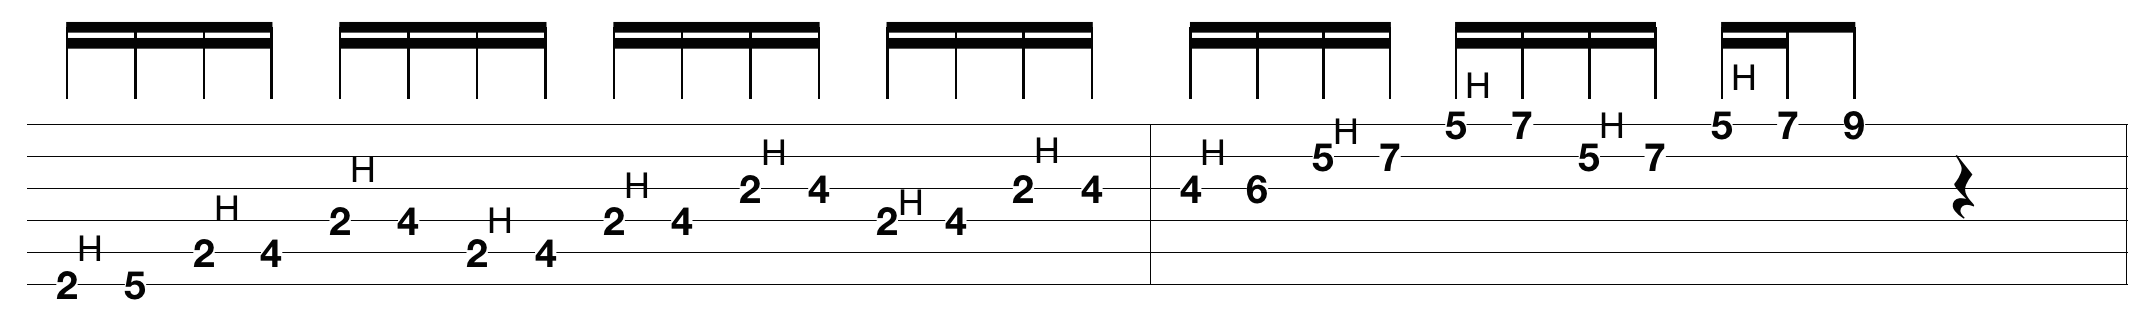 justin-guitar-scales_2.png